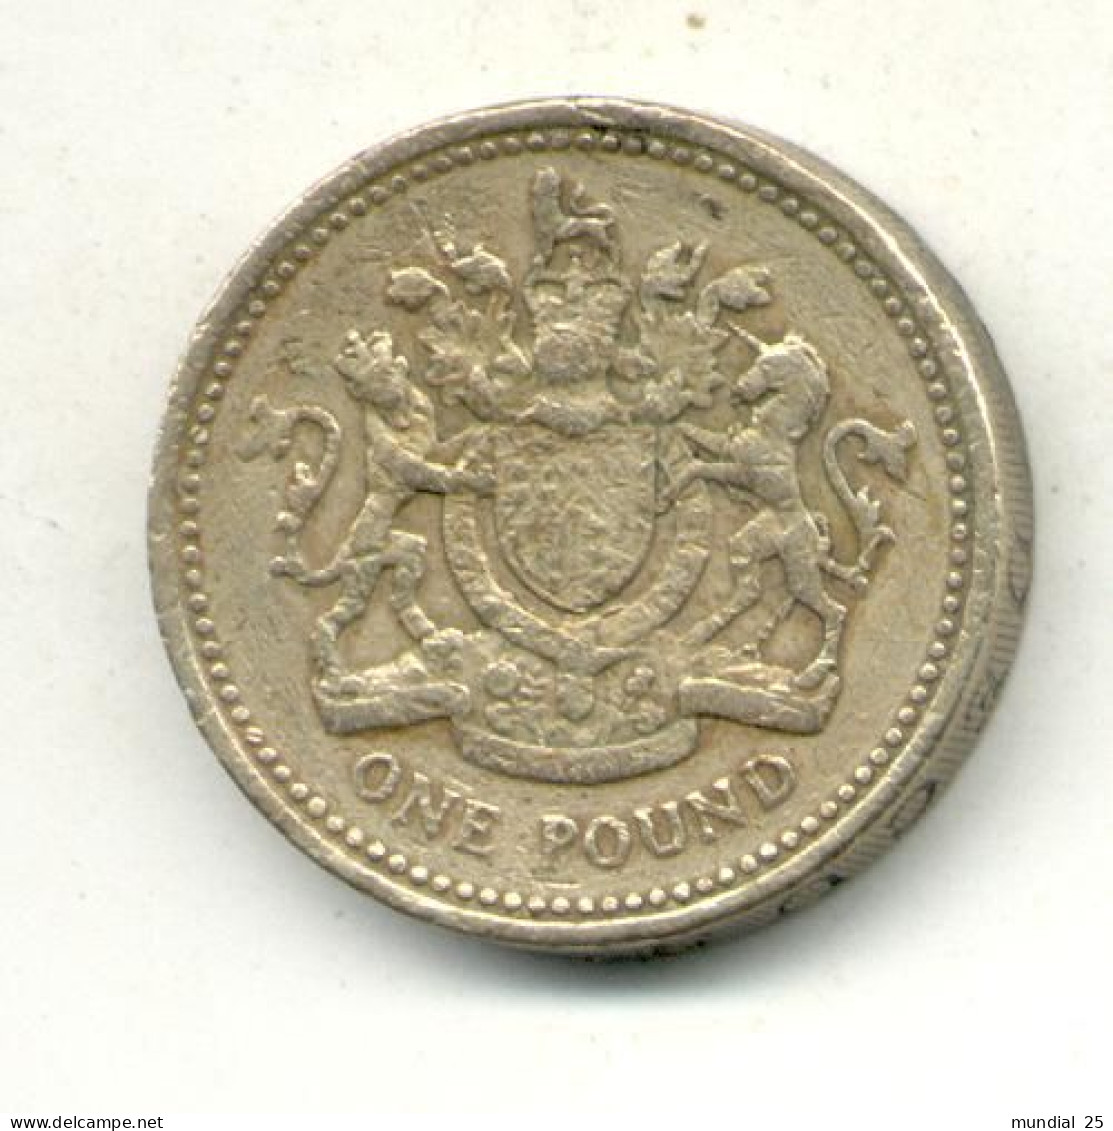 GREAT BRITAIN 1 POUND 1983 - 1 Pound